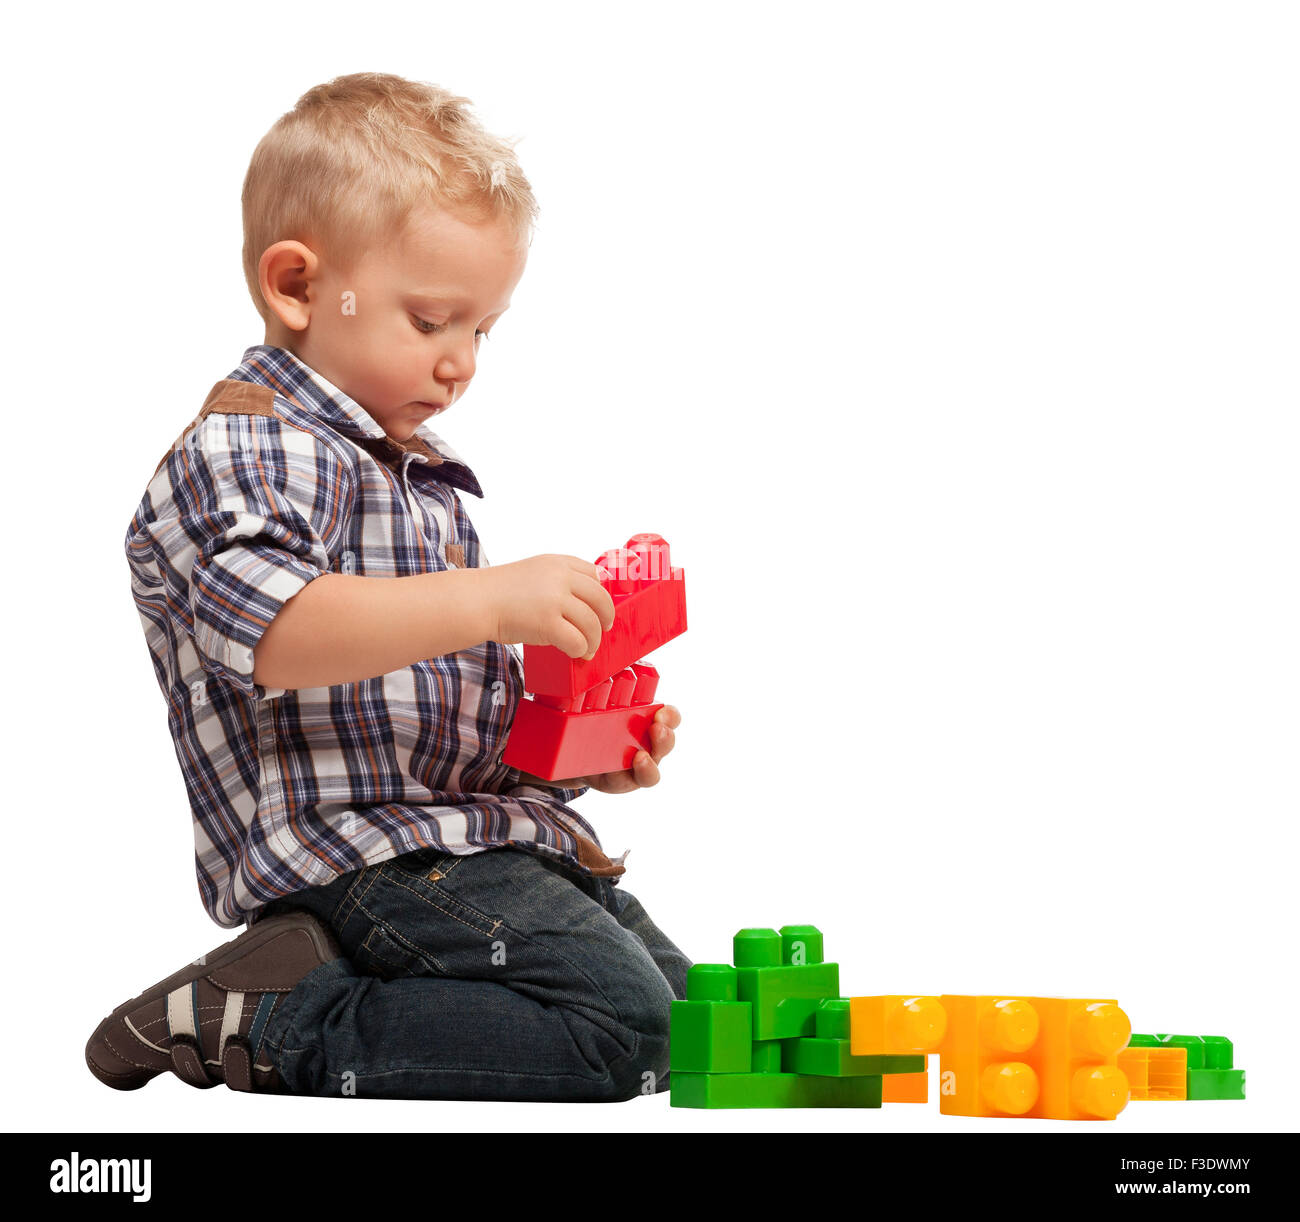 Kinderspiel mit Bau-Klötzchen isoliert auf weiss Stockfoto